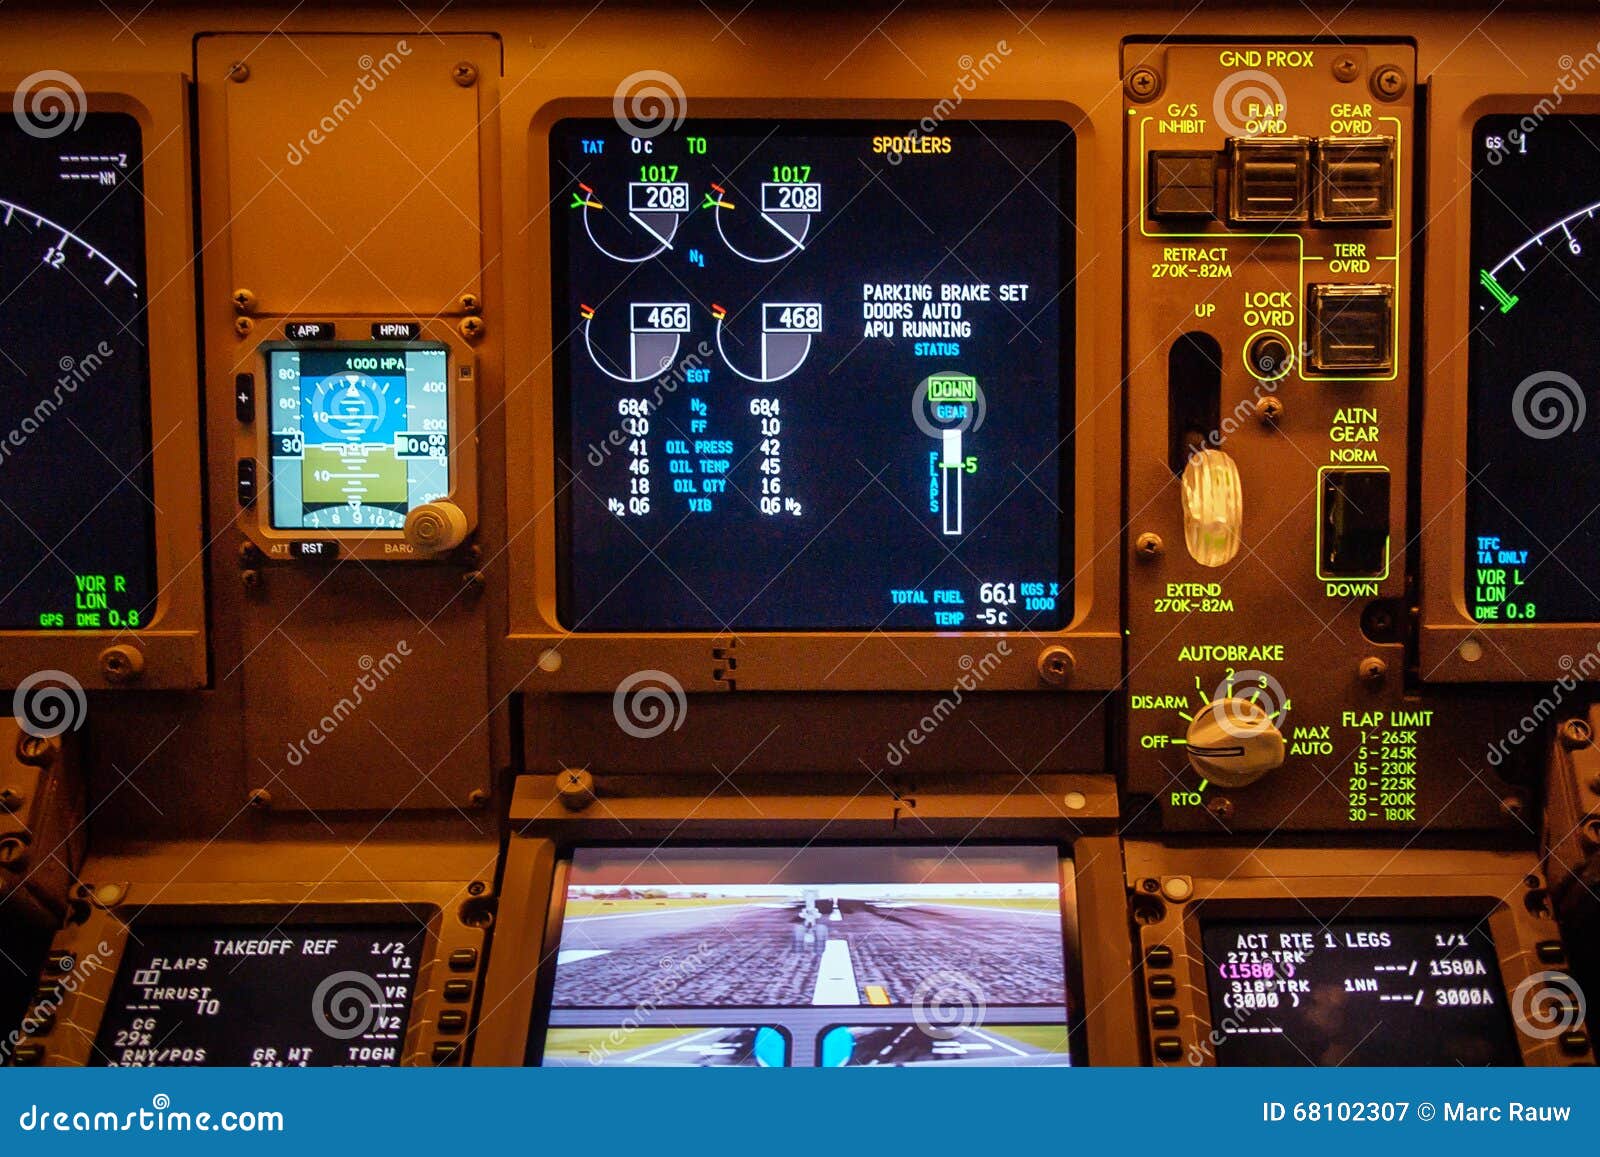 777 cockpit sounds